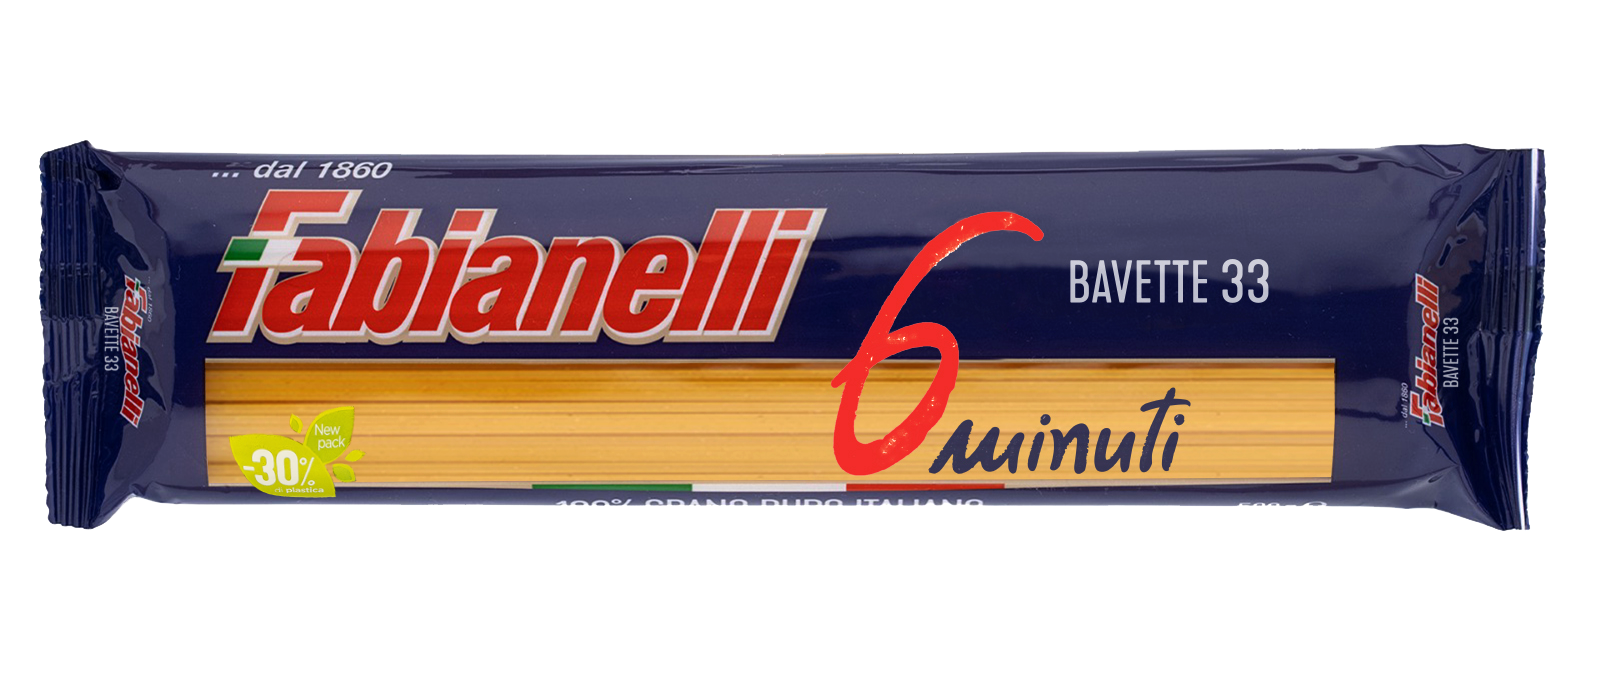 ფაბიანელი-მაკარონი BAVETTE  N33,500გ